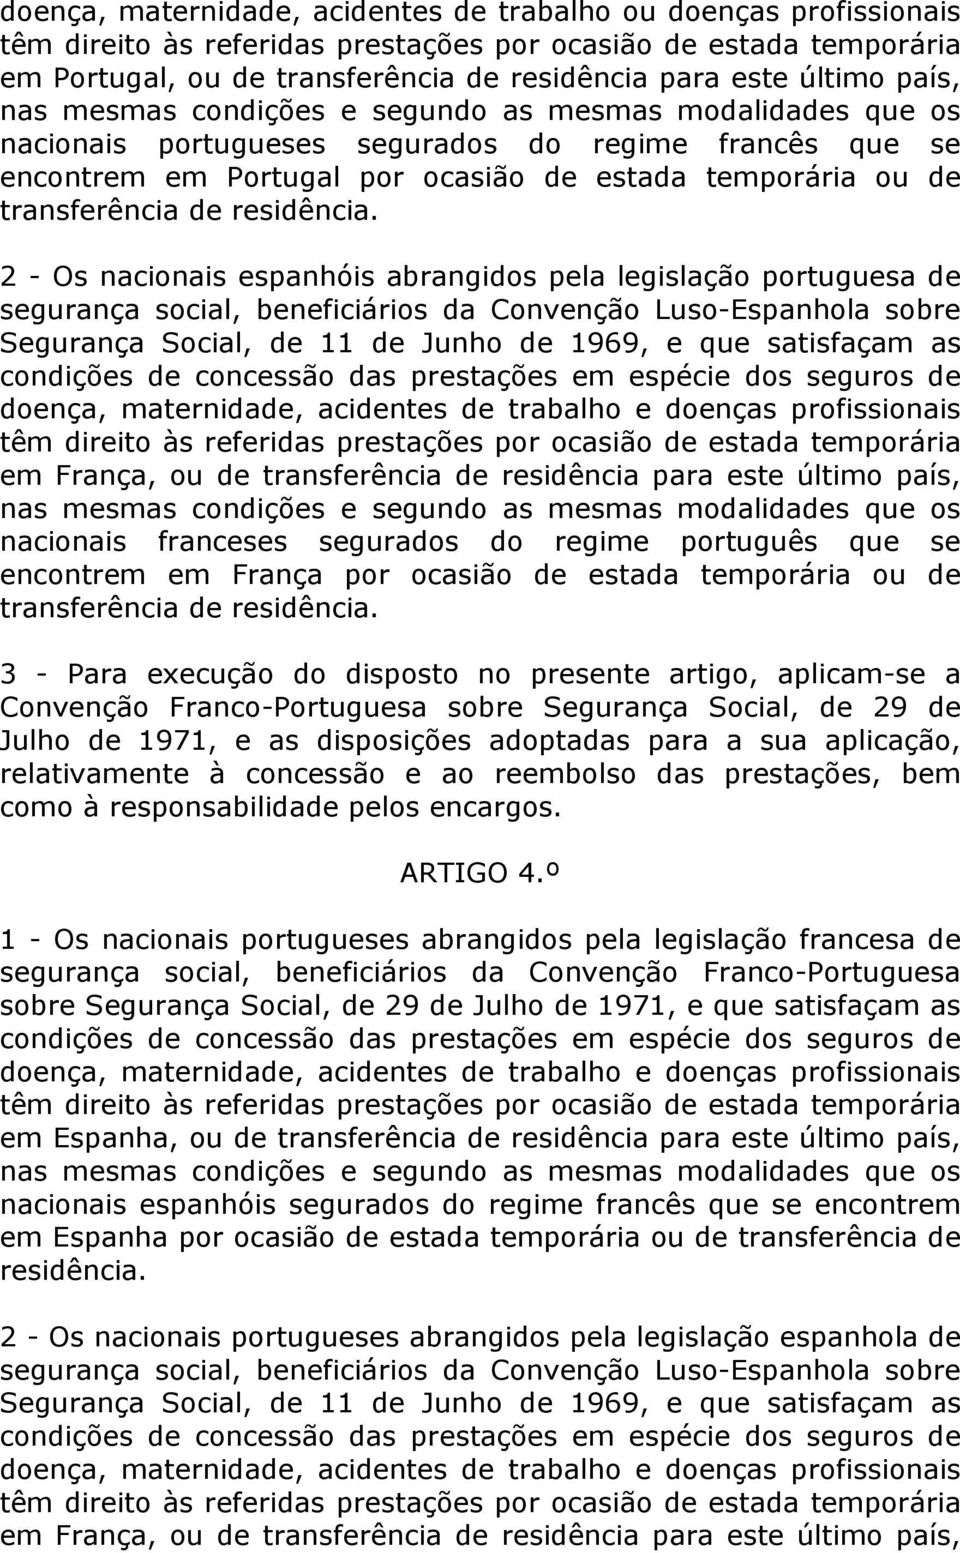 Segurança Social, de 11 de Junho de 1969, e que satisfaçam as em França, ou de transferência de residência para este último país, nacionais franceses segurados do regime português que se encontrem em